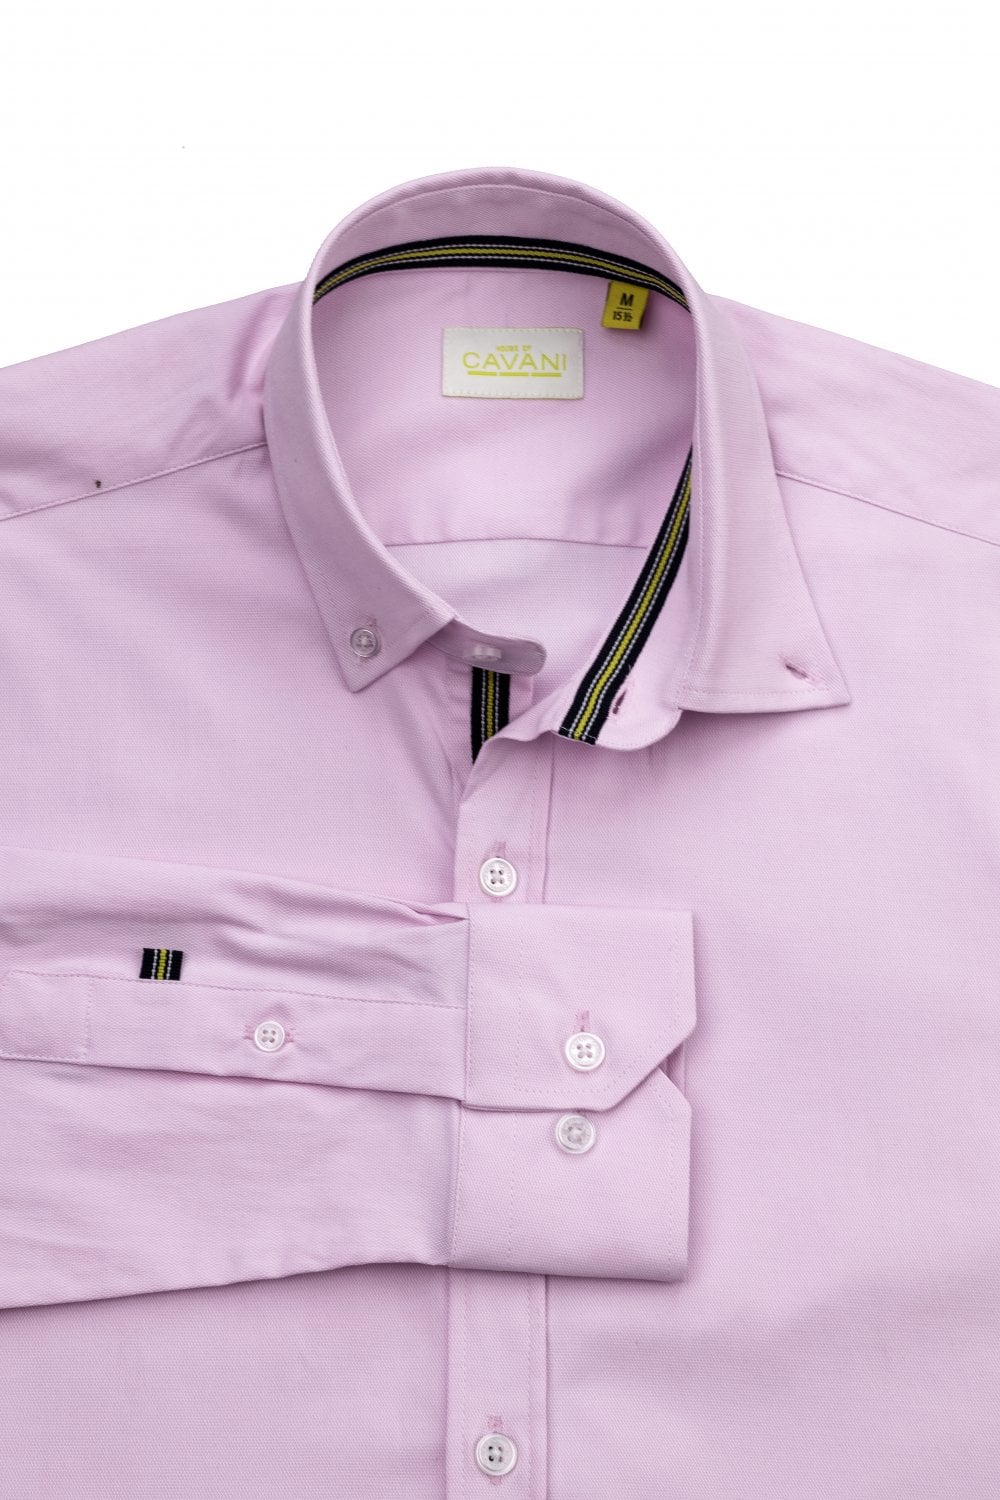 Tessa Pink Cotton Shirt - Shirts - S/14.5 - THREADPEPPER